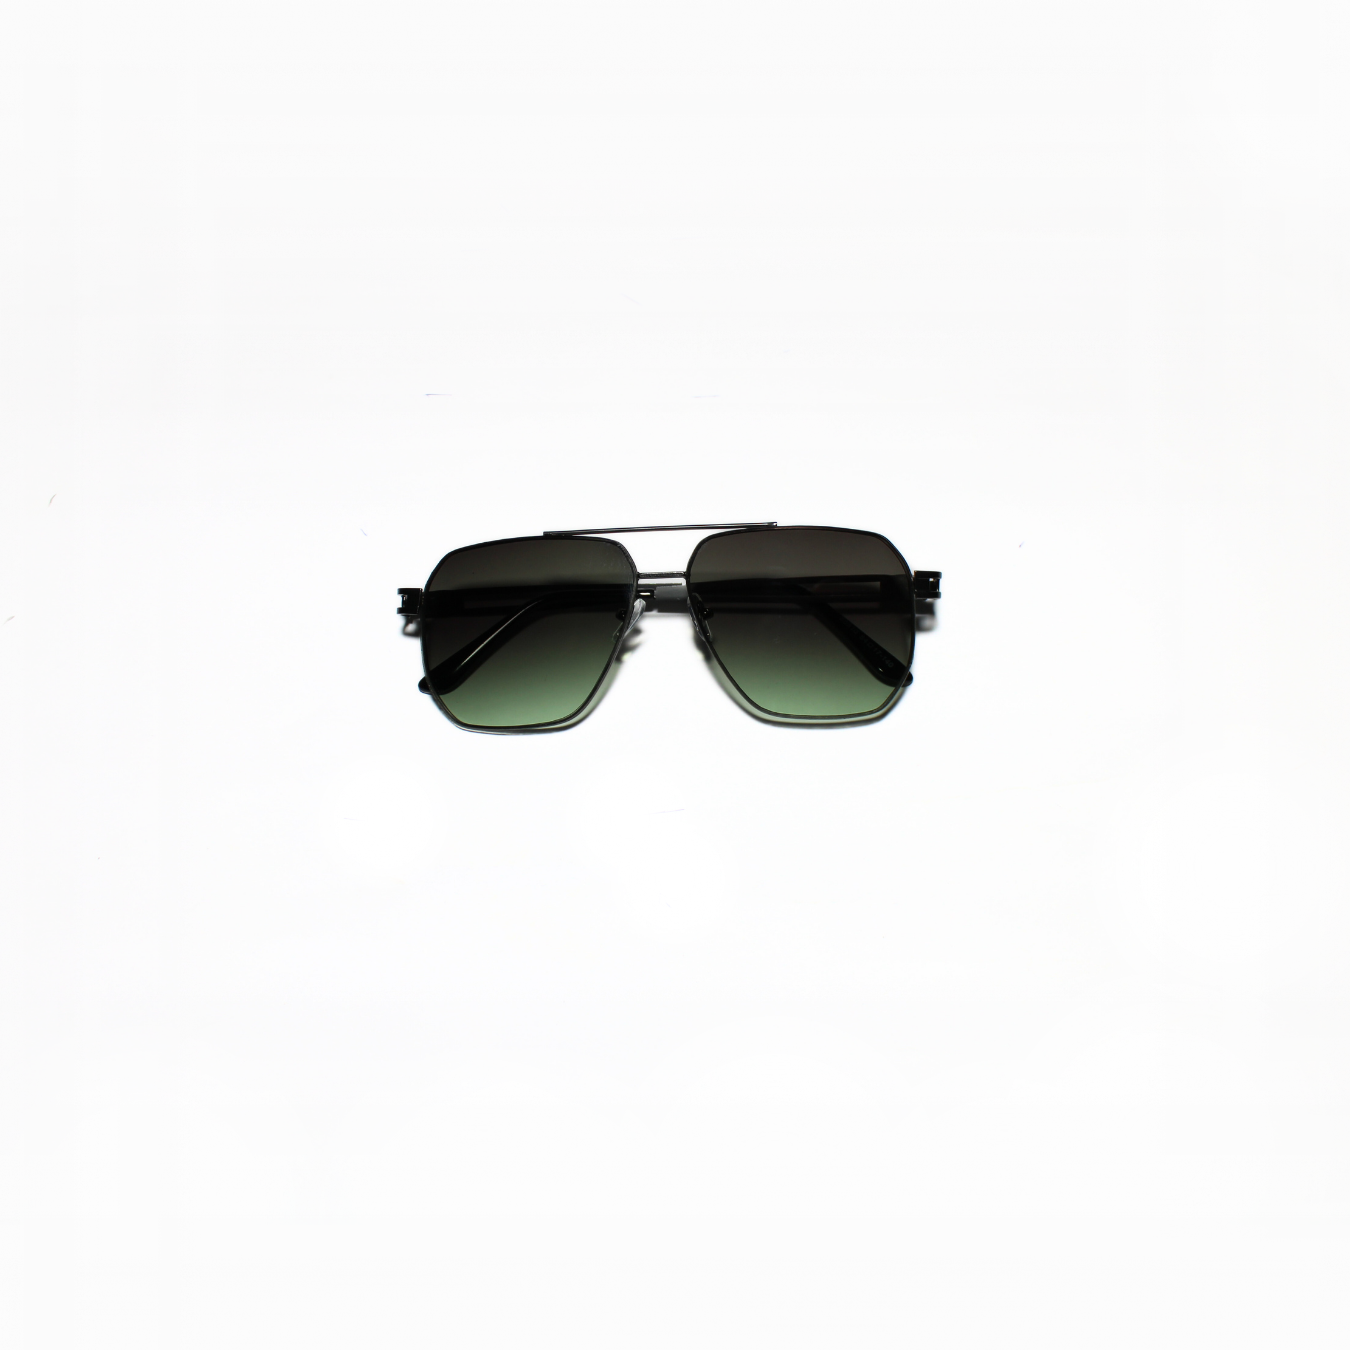 ARTHUR-I//003 I Sunglasses for Women - Specsview